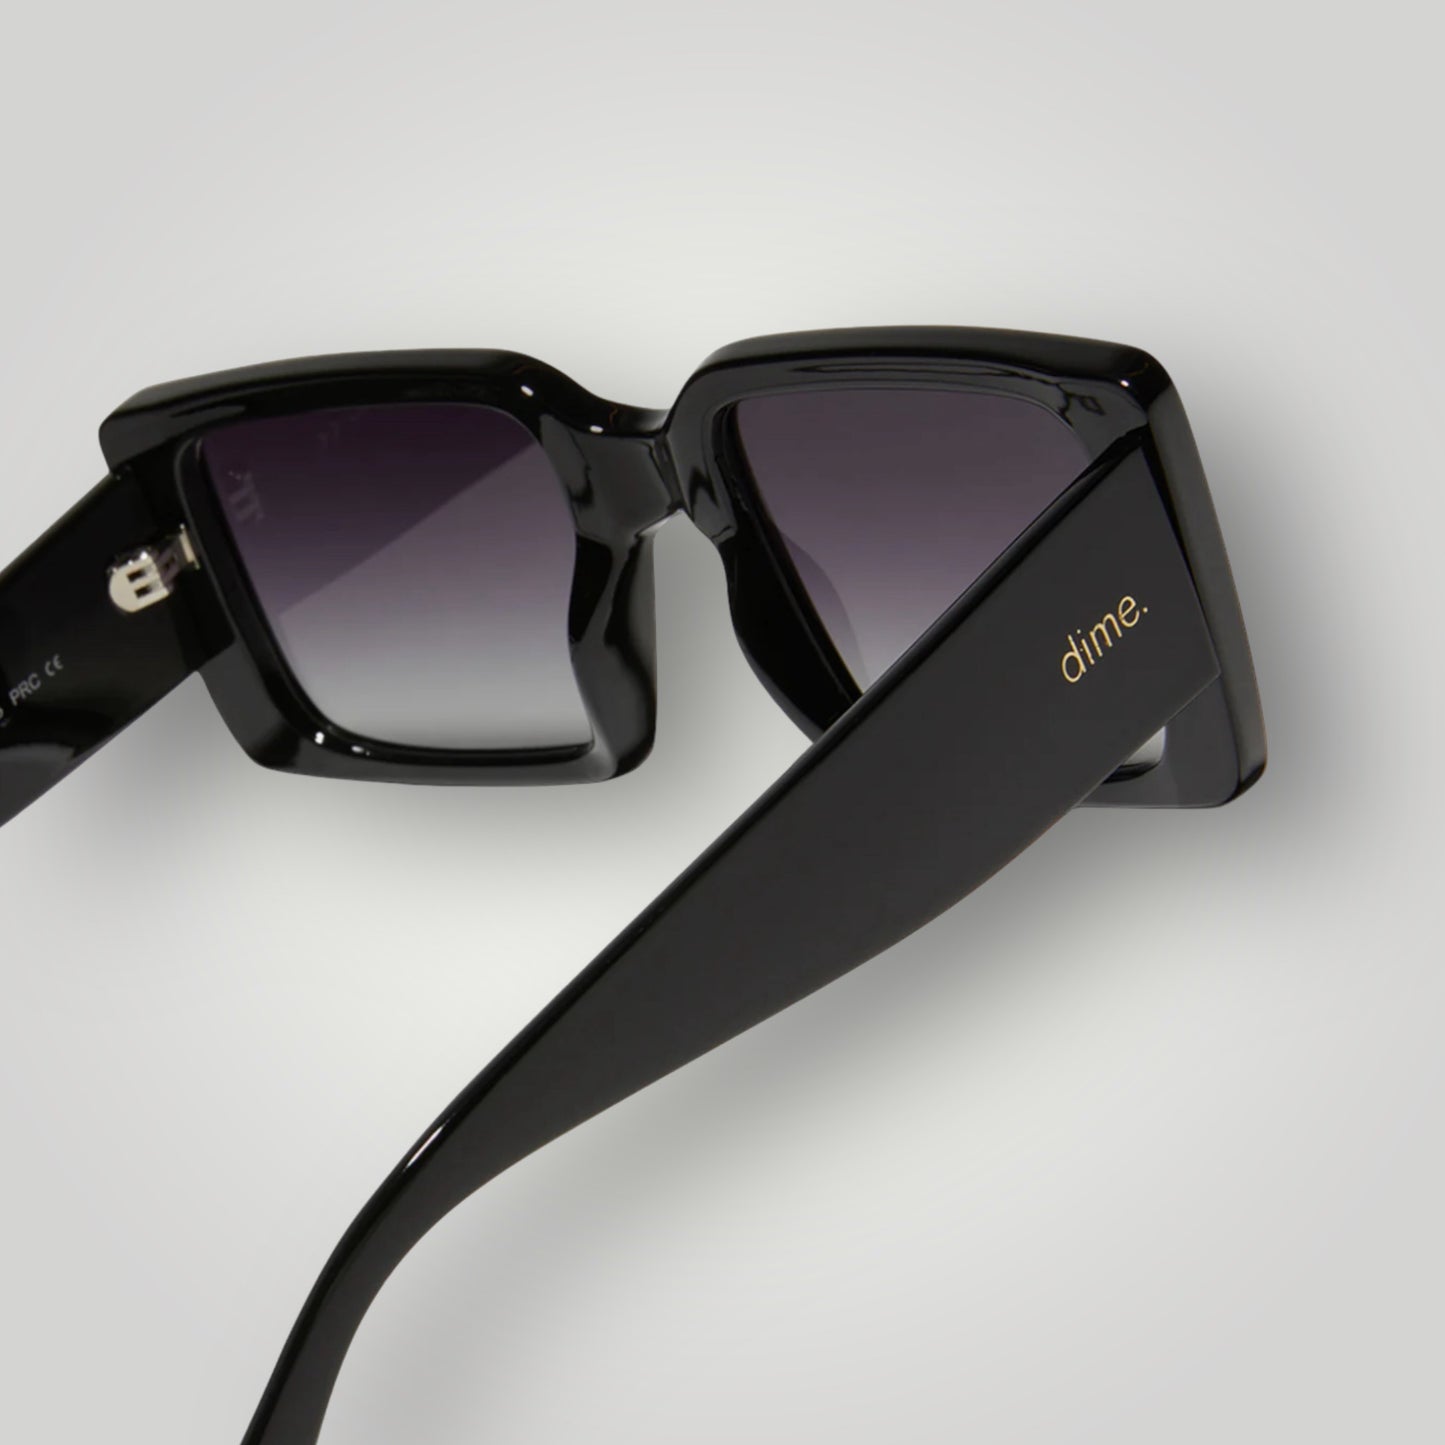 Sunset Sunglasses: black + grey polarized